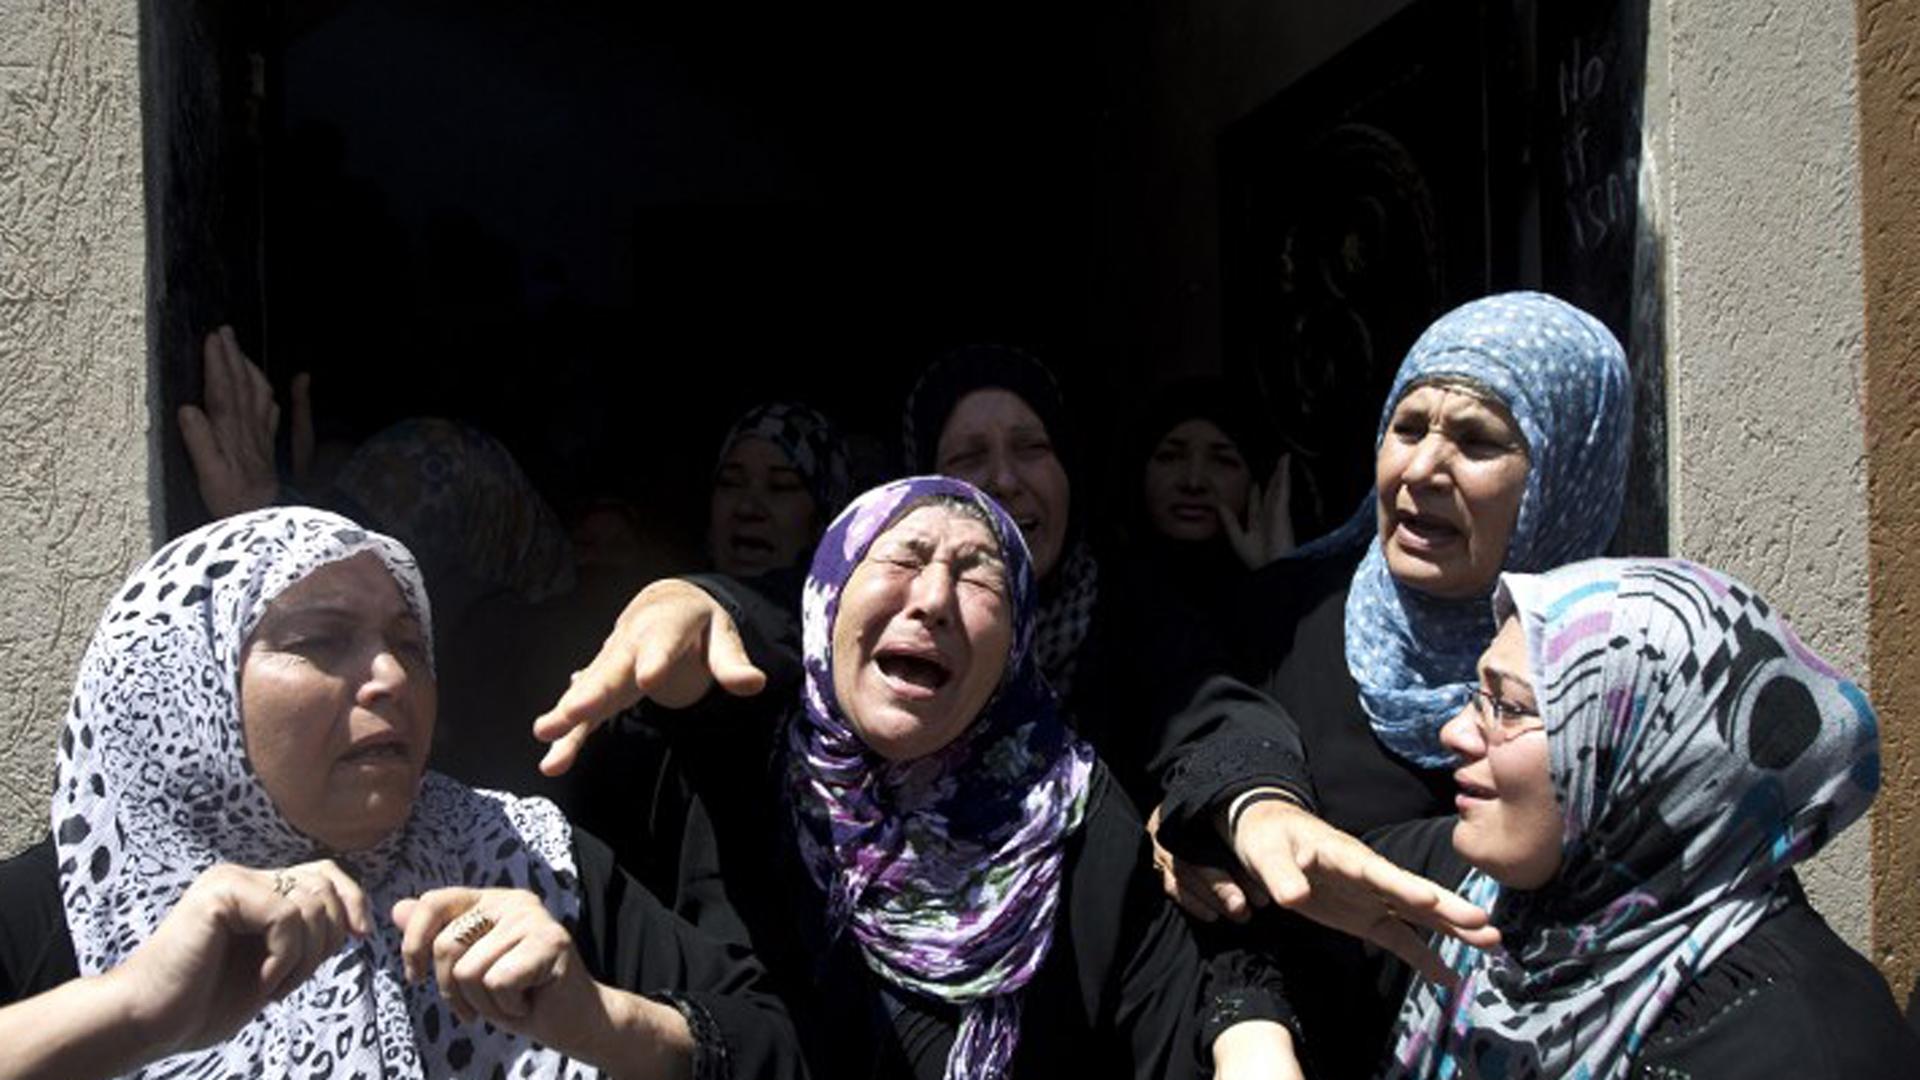 Palästinensische Frauen trauern um eine getötete Familie nach Luftangriffen auf Ziele im Gazastreifen